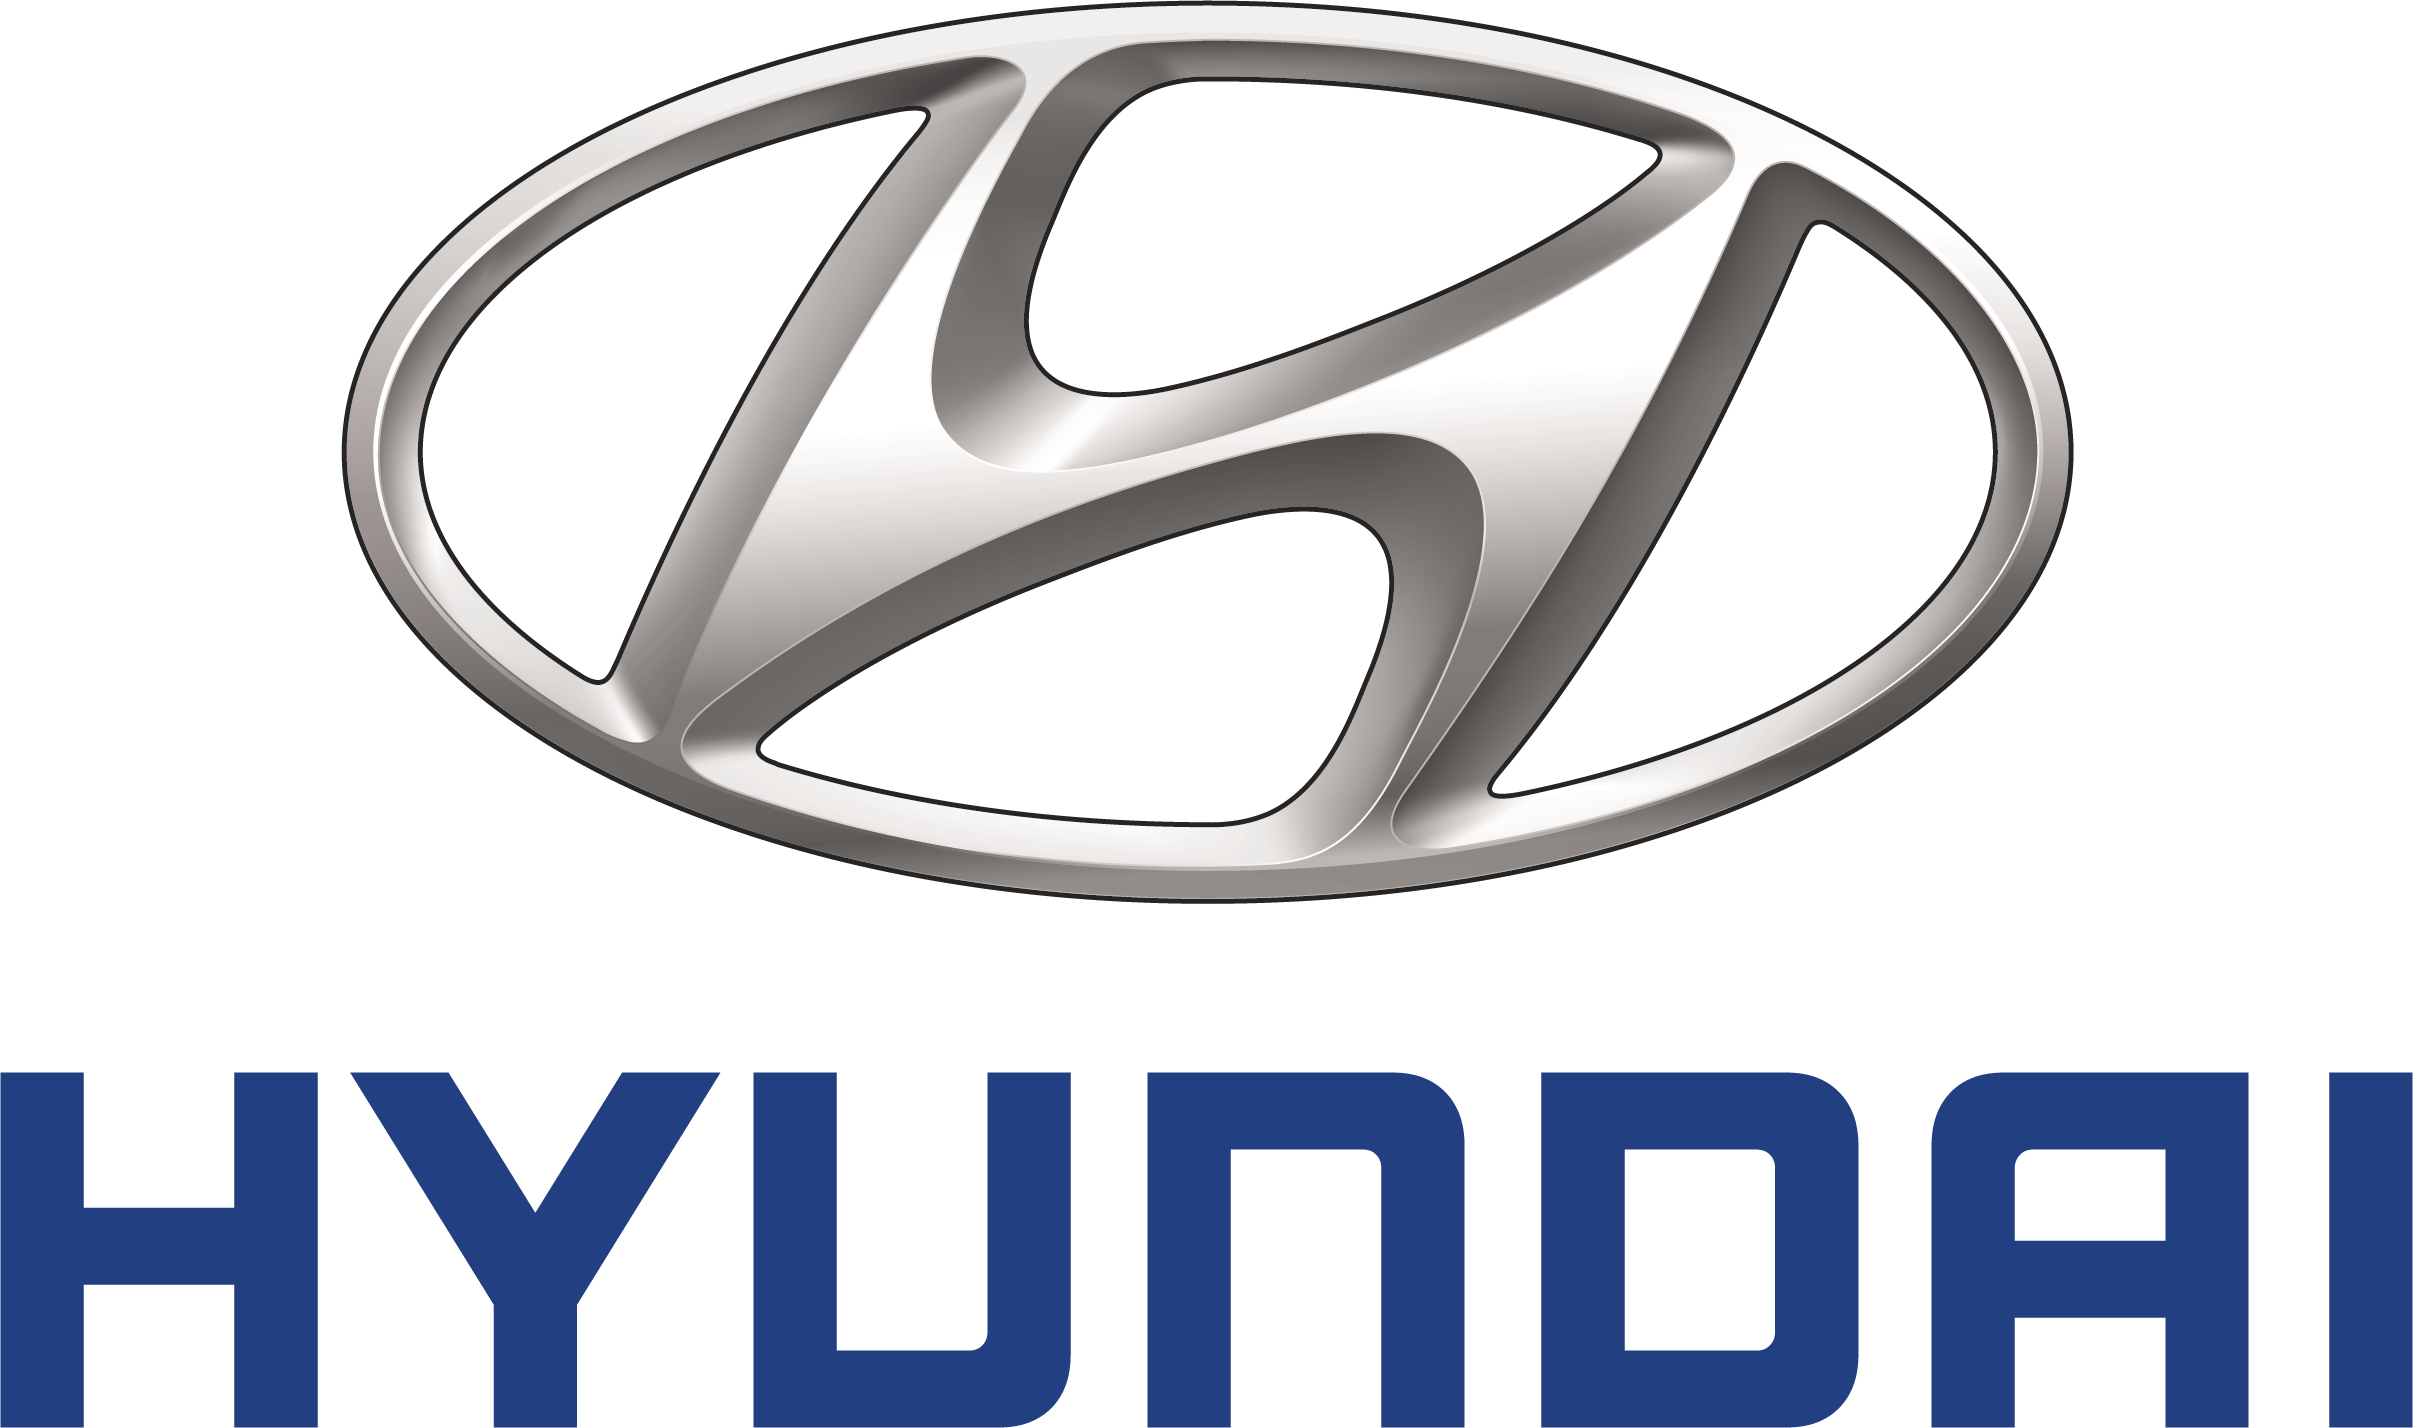 Old Hyundai Logo - Hyundai Logo, Huyndai Car Symbol Meaning and History | Car Brand ...